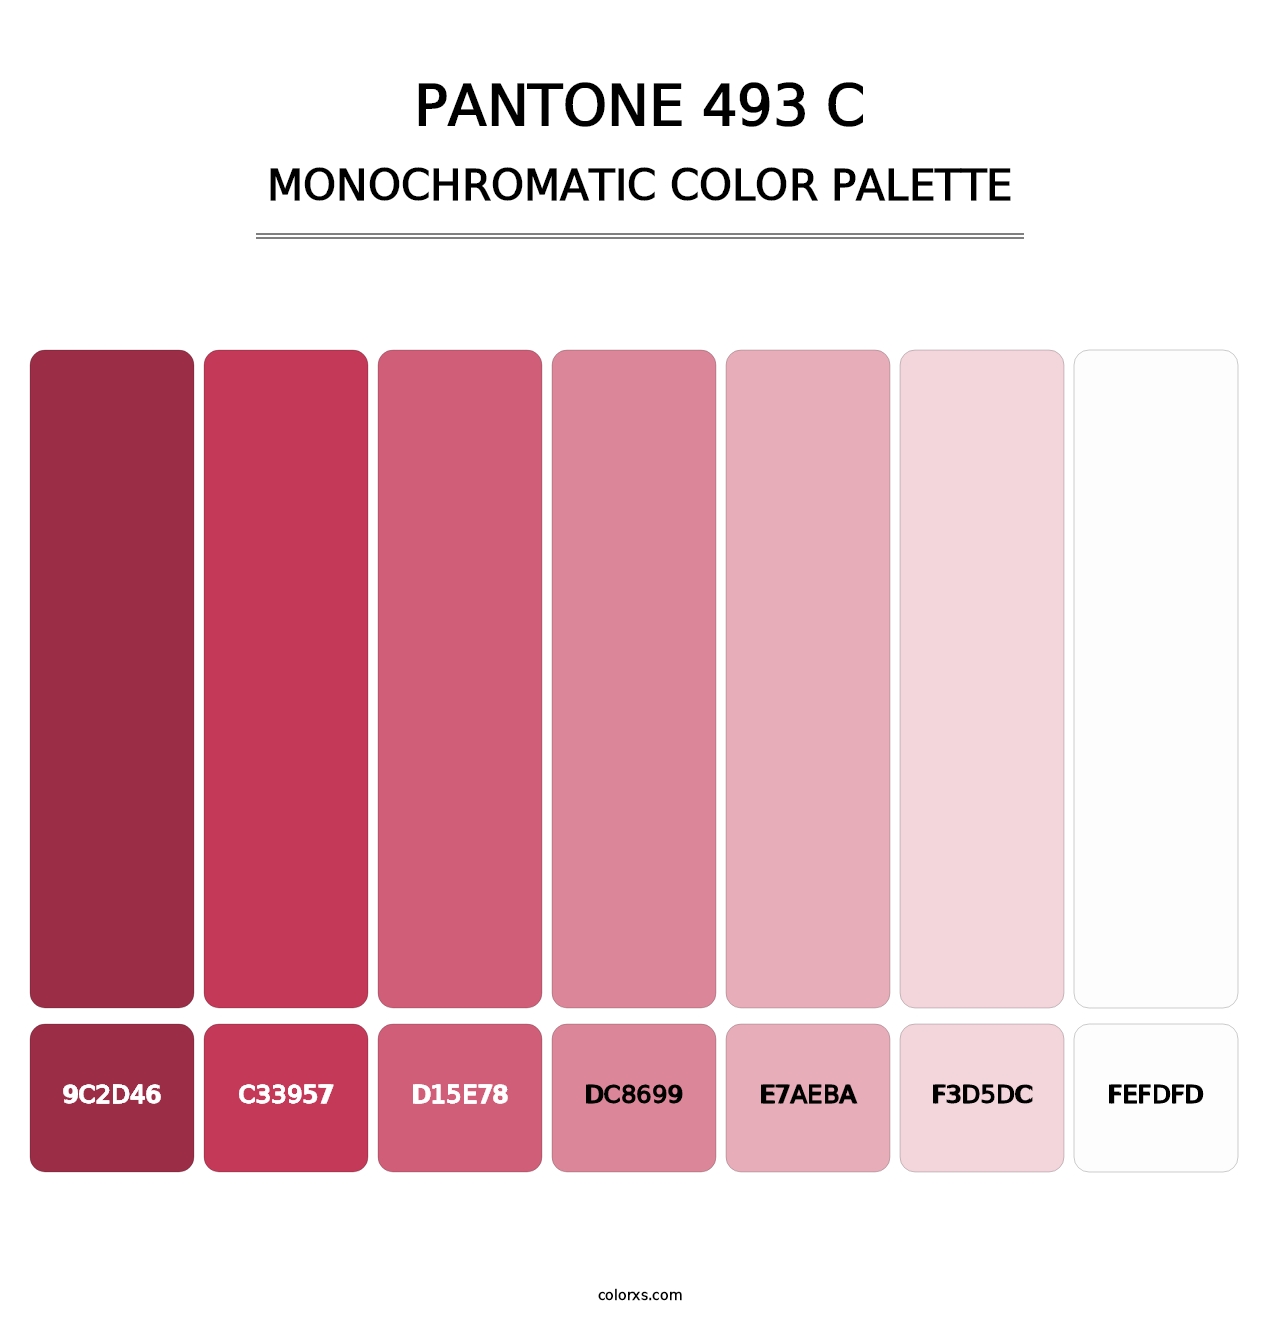 PANTONE 493 C - Monochromatic Color Palette